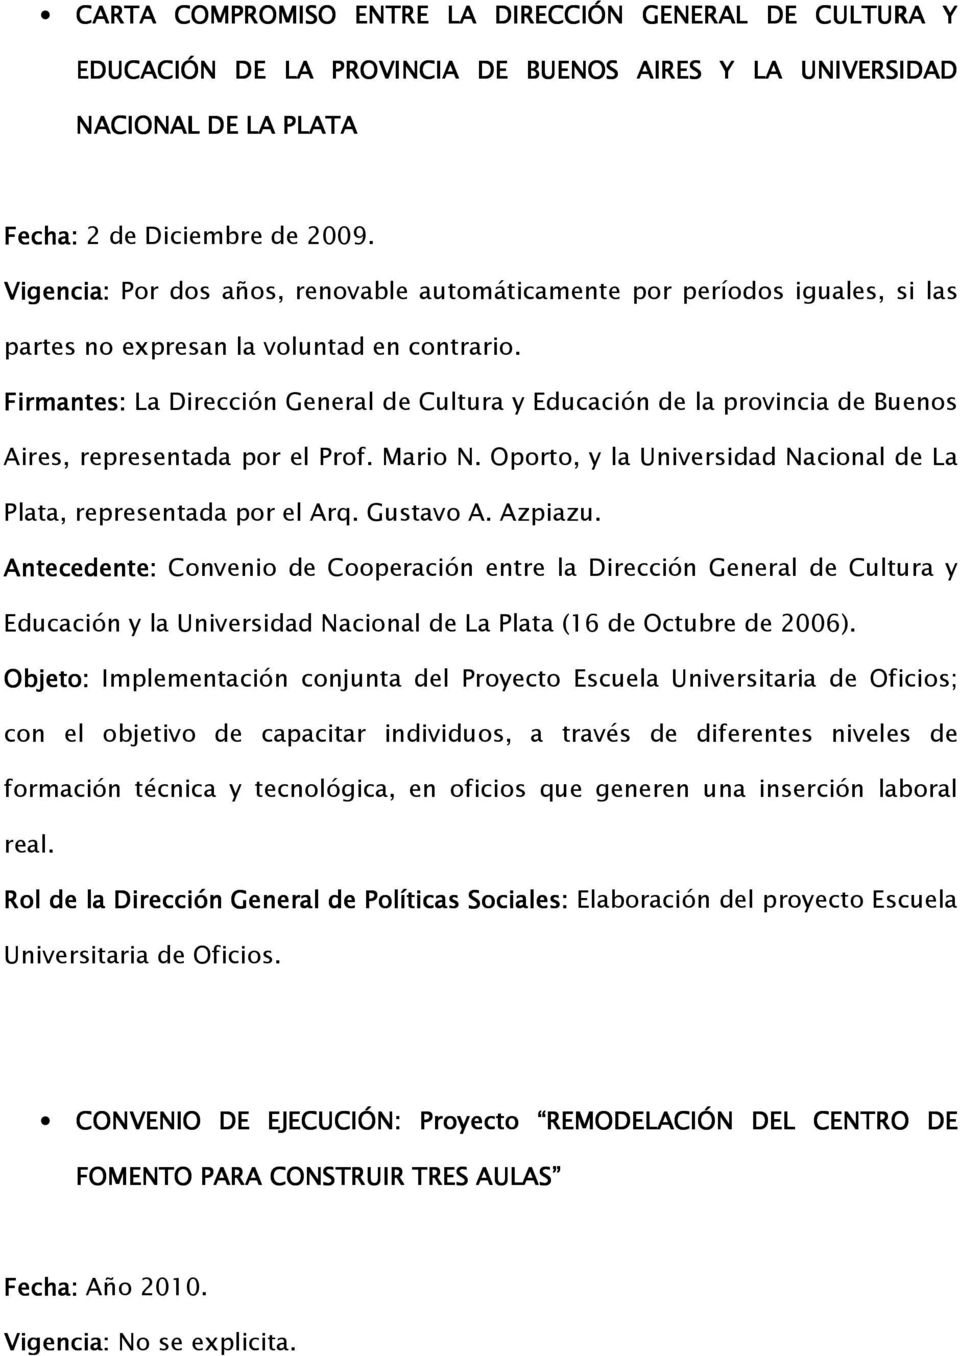 Firmantes: La Dirección General de Cultura y Educación de la provincia de Buenos Aires, representada por el Prof. Mario N. Oporto, y la Universidad Nacional de La Plata, representada por el Arq.